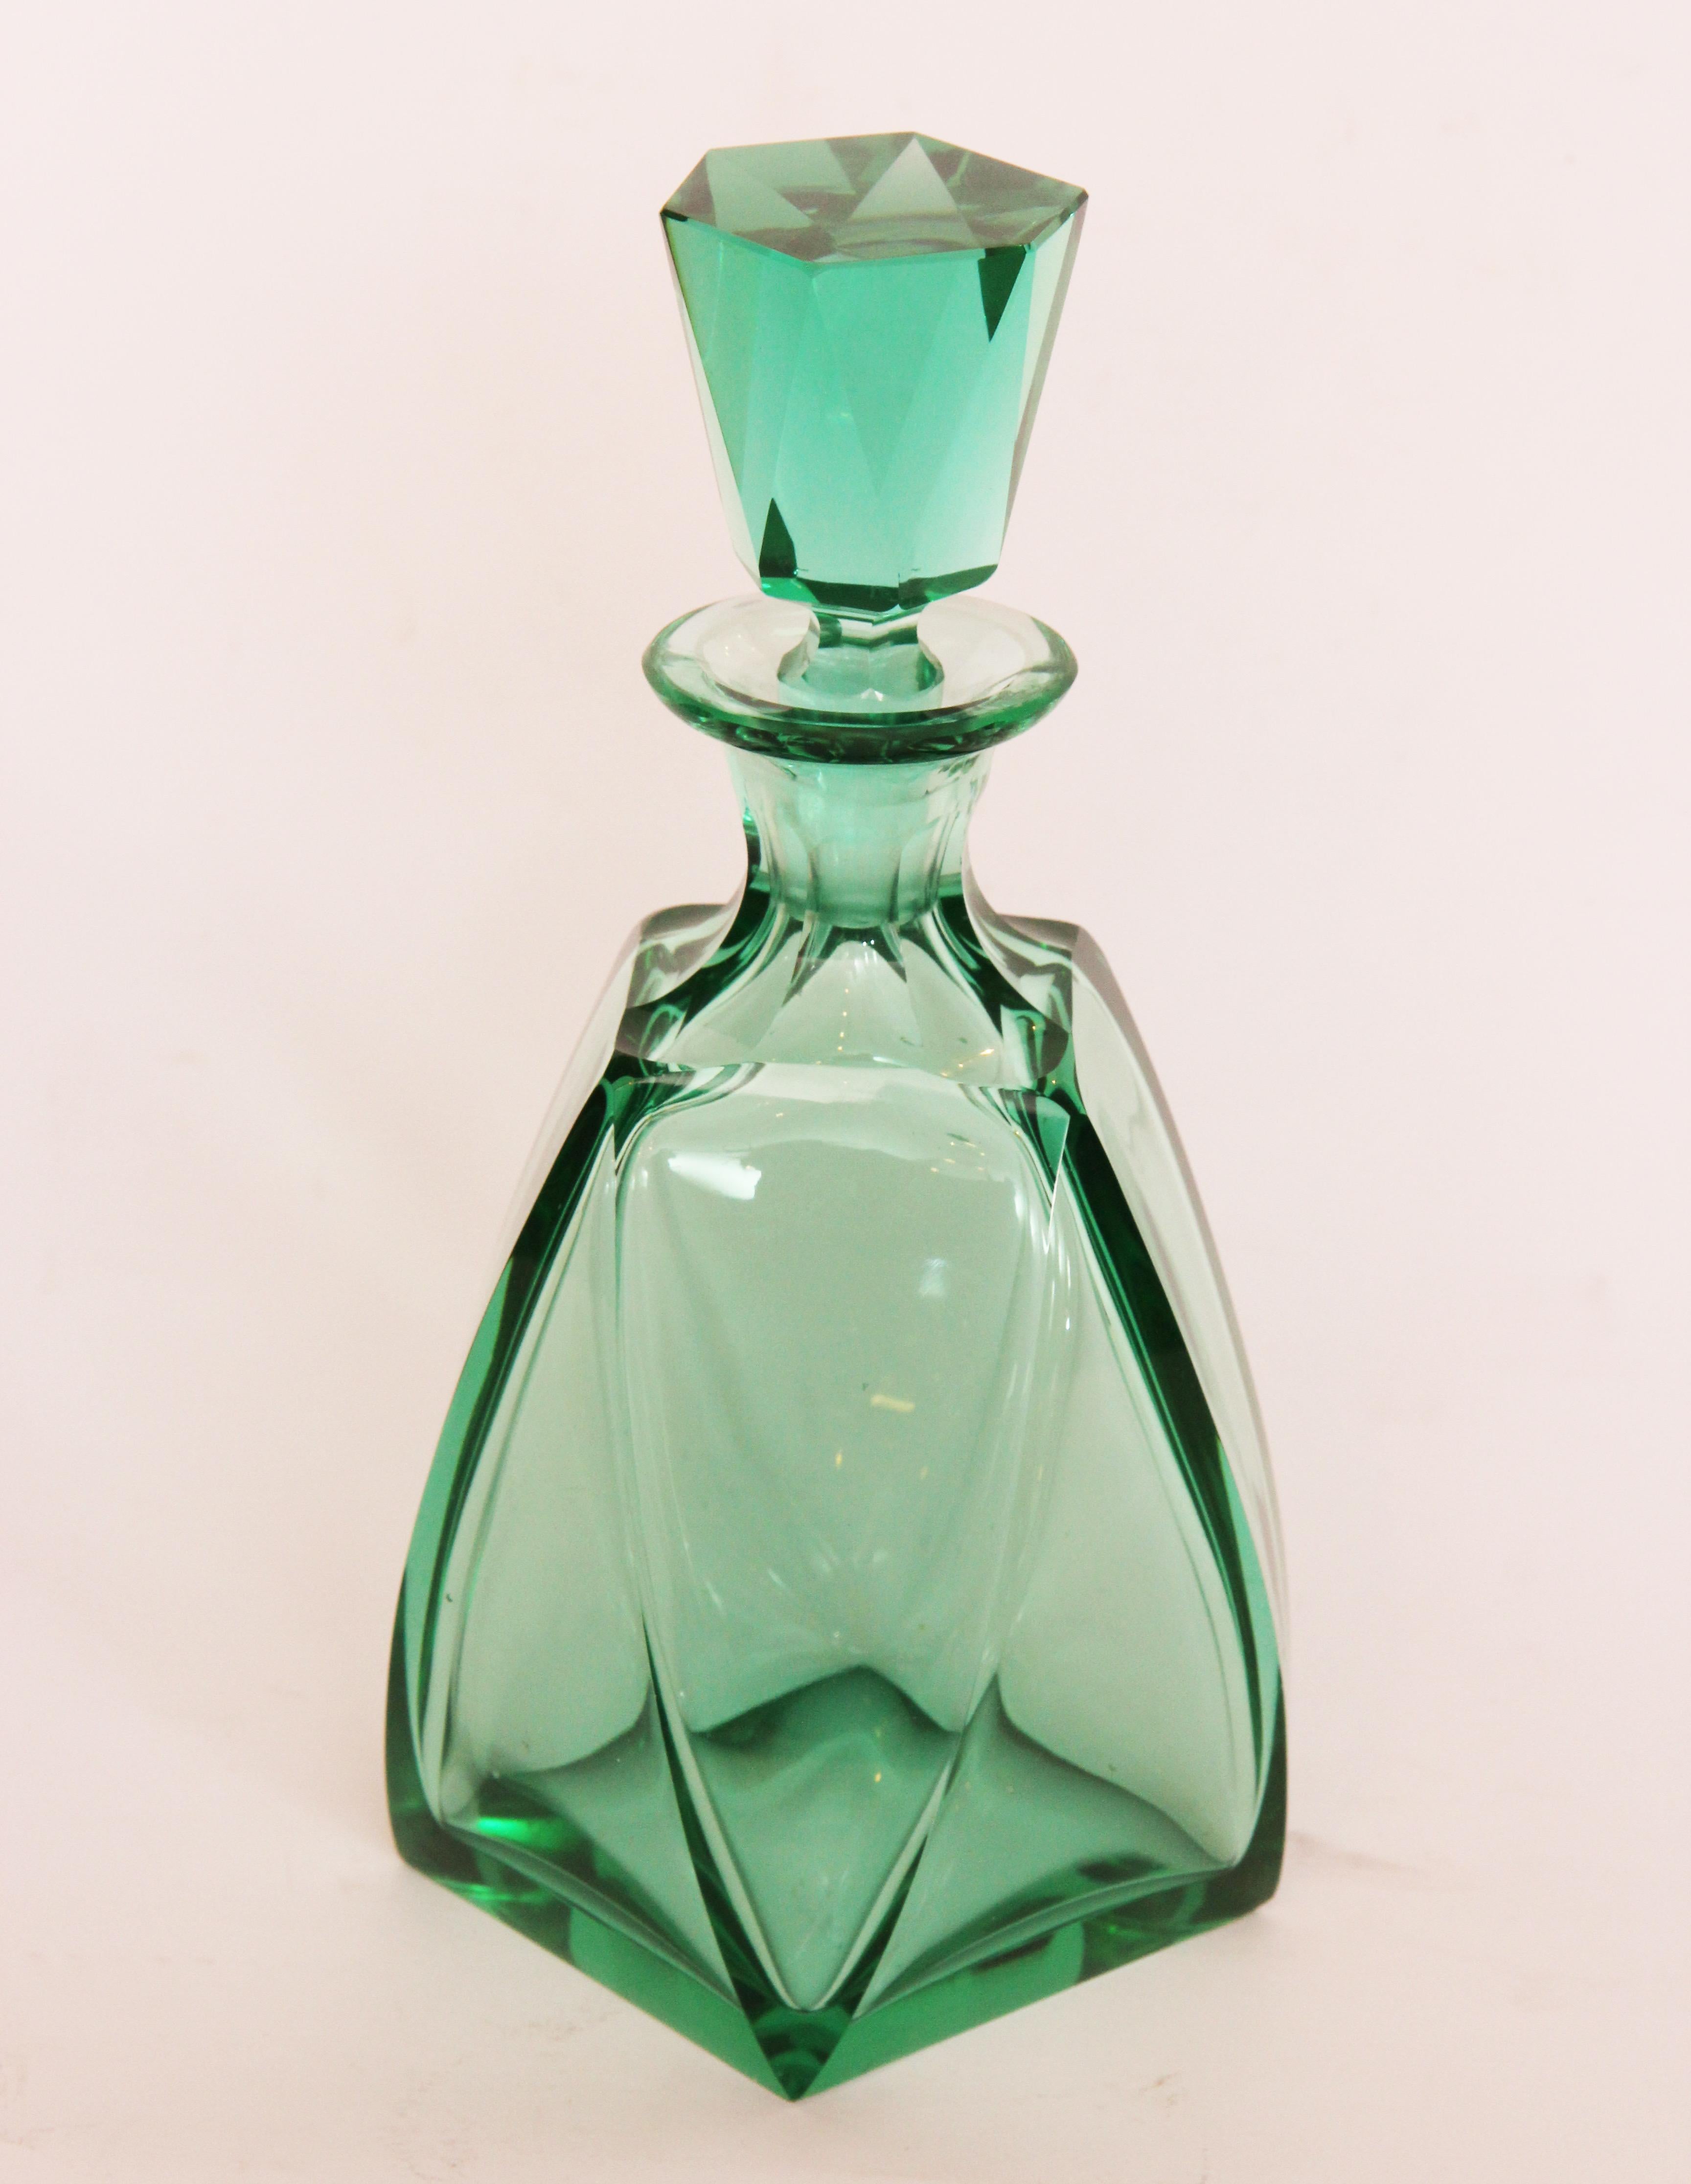 Art Deco cut crystal liquor set.
Measures: Bottle - H 25cm, W 12cm, D 12cm 
Glass - H 8cm, W 9cm, D 9cm.
Czech, circa 1930.